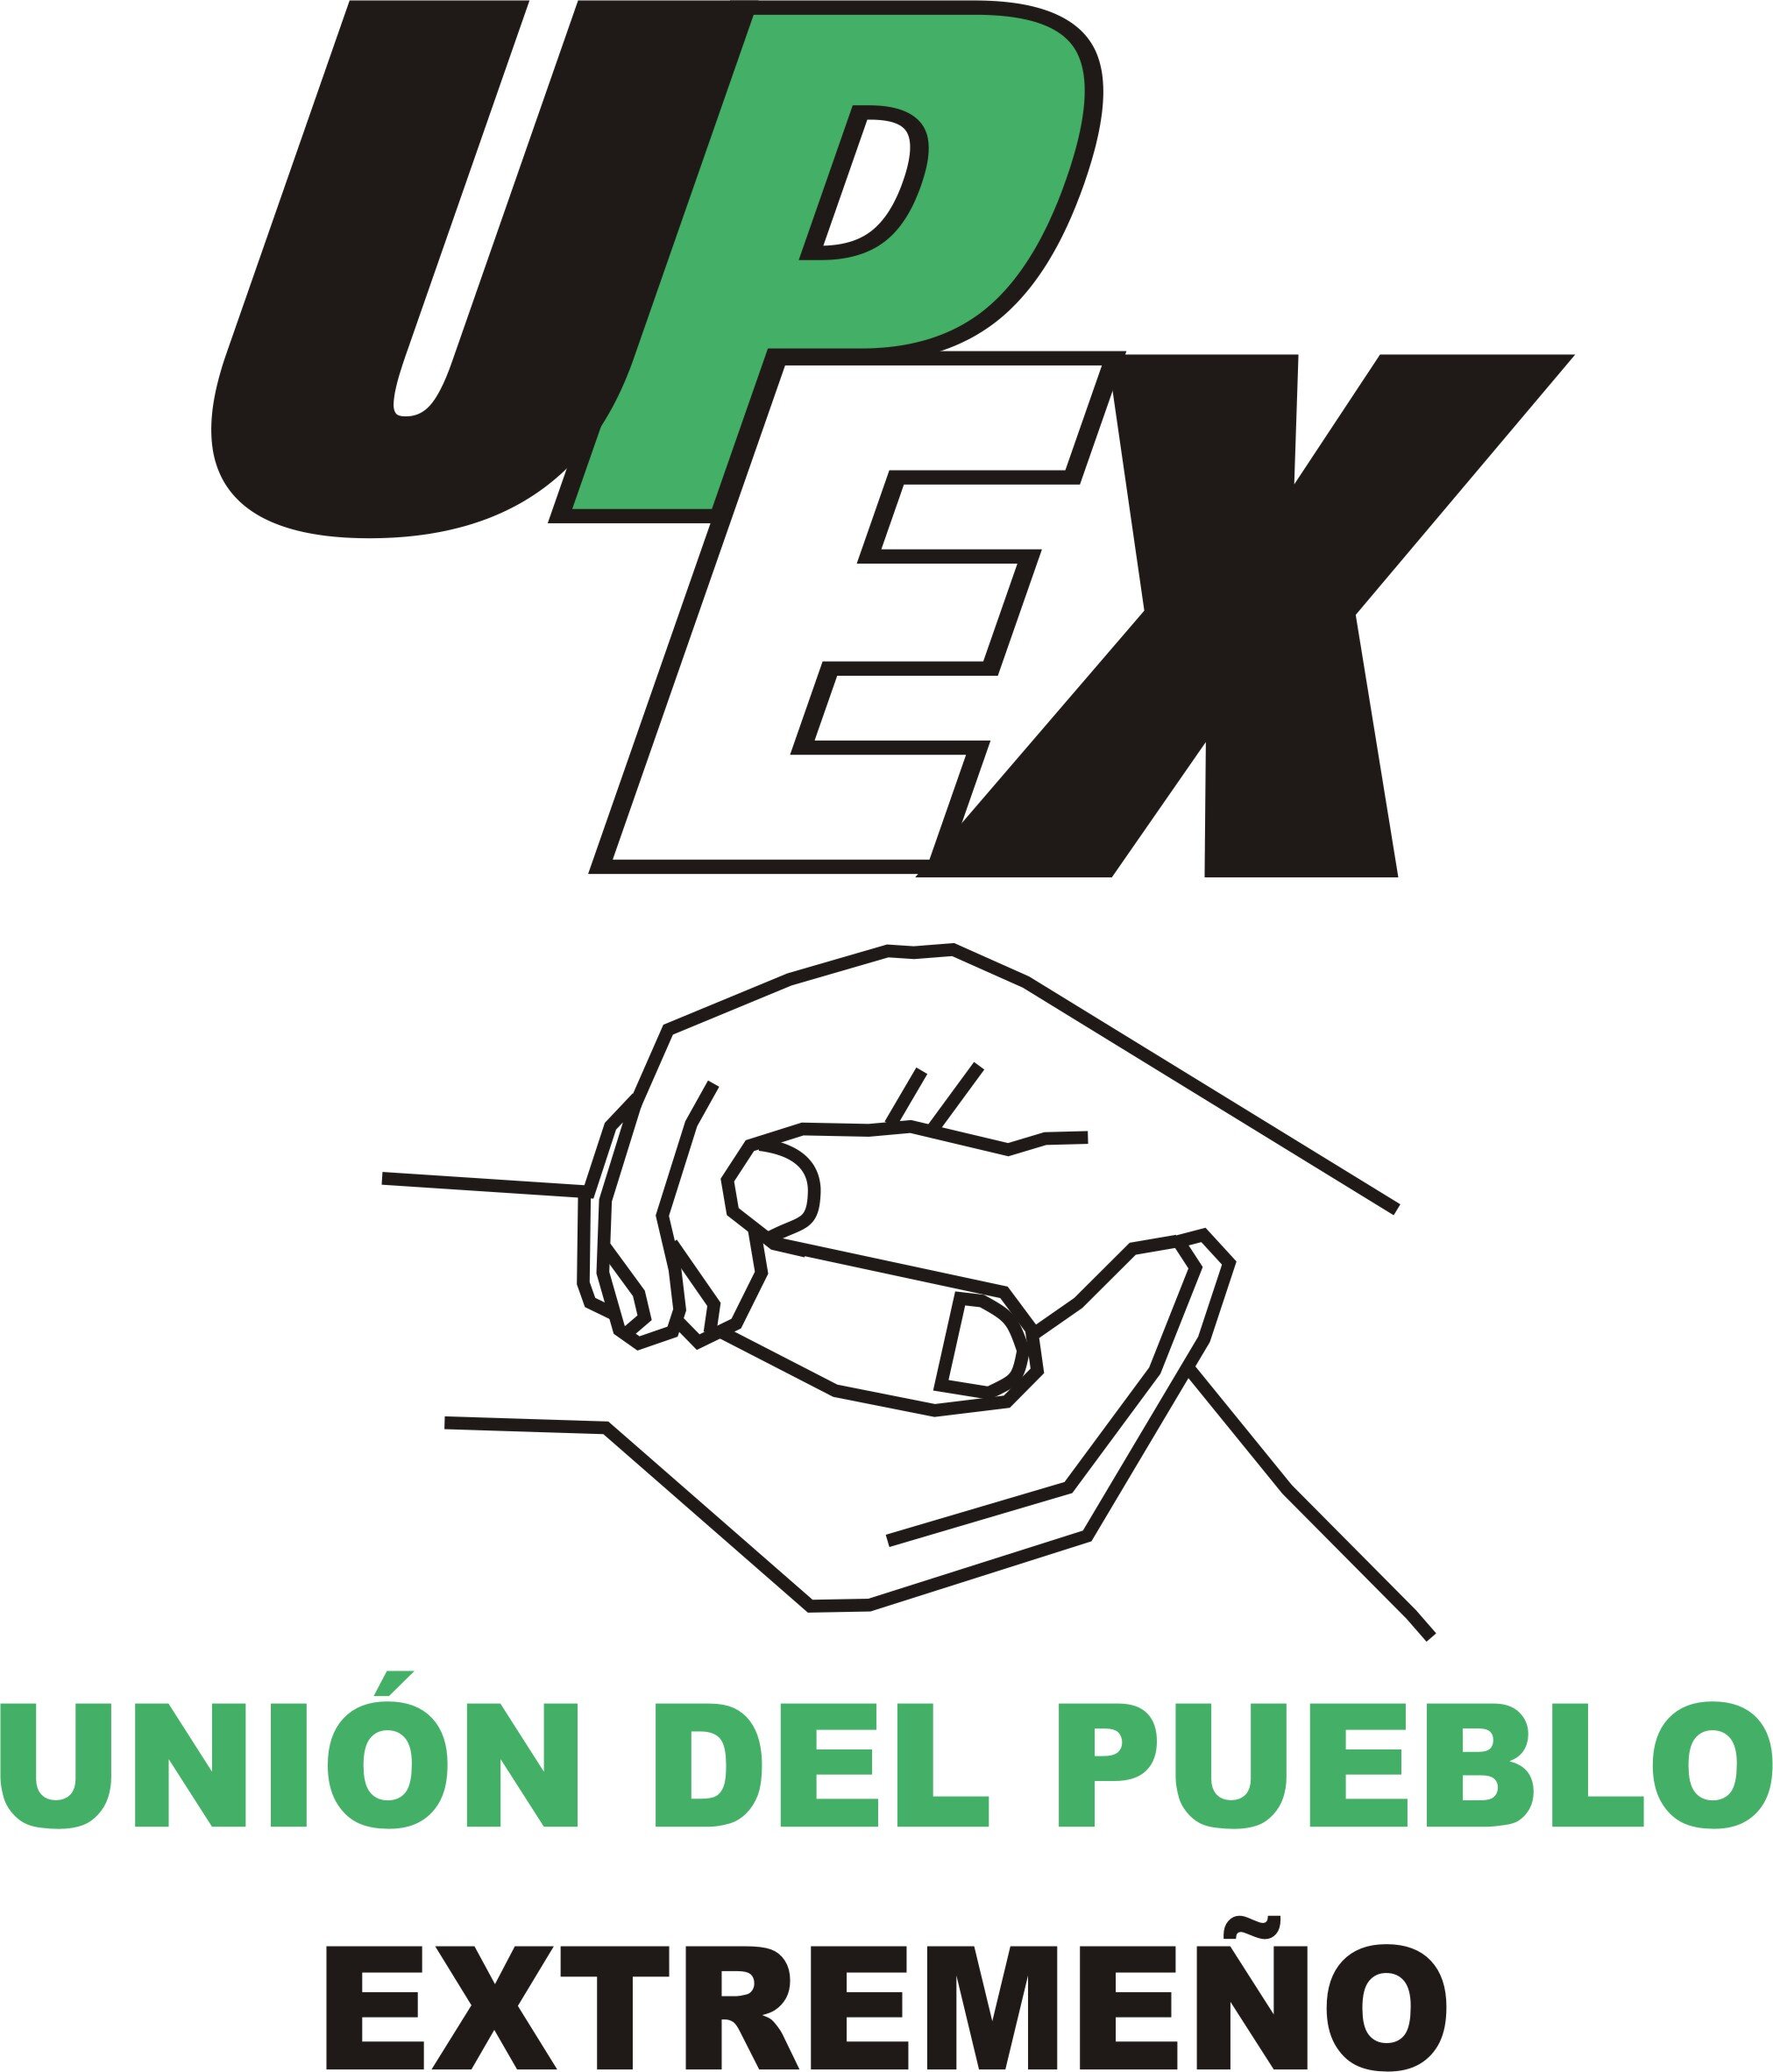 Unión del Pueblo Extremeño, Partido Regionalista extremeño. Comprometidos con Extremadura y trabajando por los extremeños.